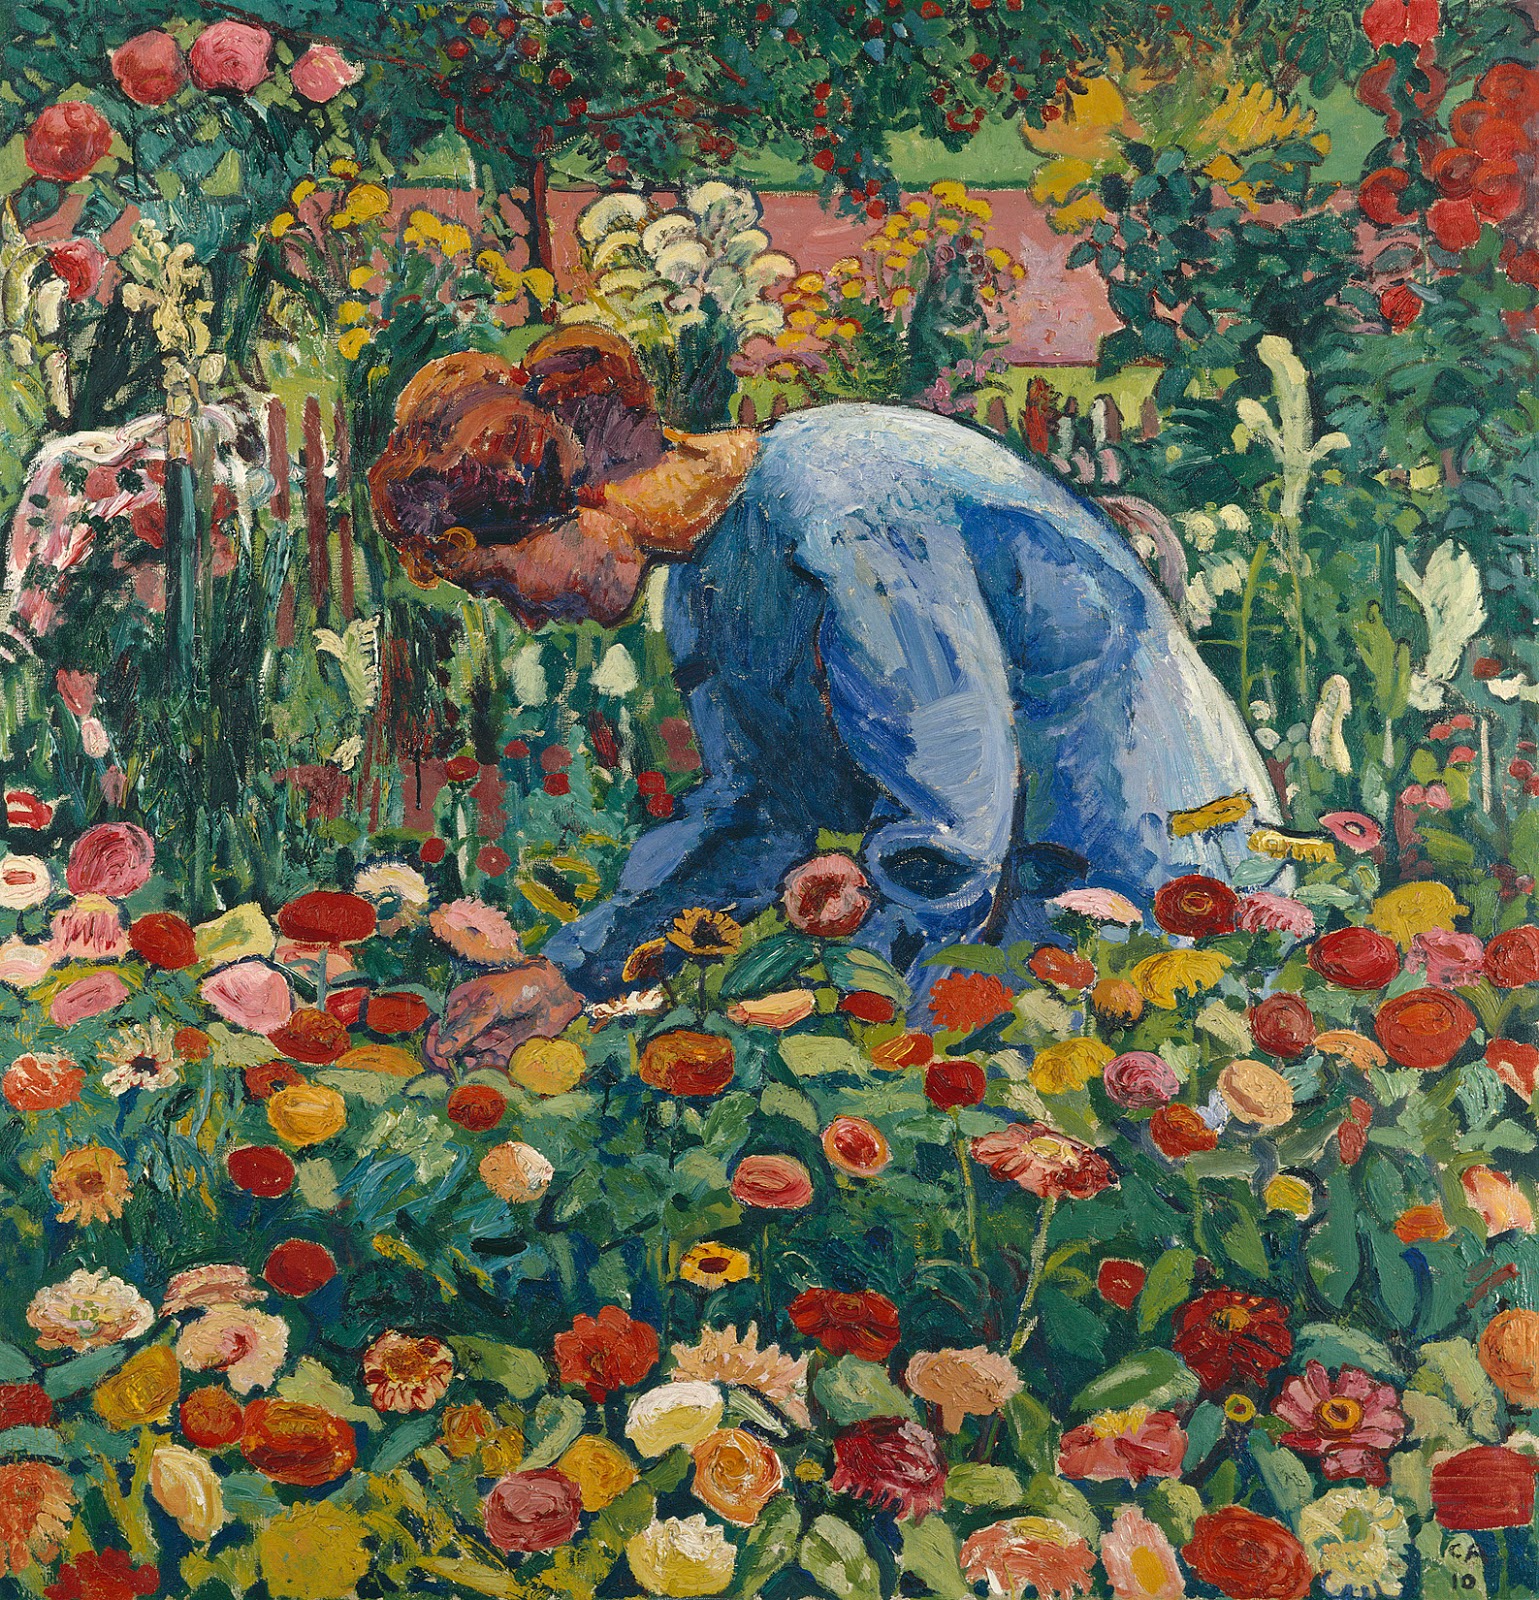 Cuno-Amiet-Anna-Amiet-in-the-flower-garden-1910